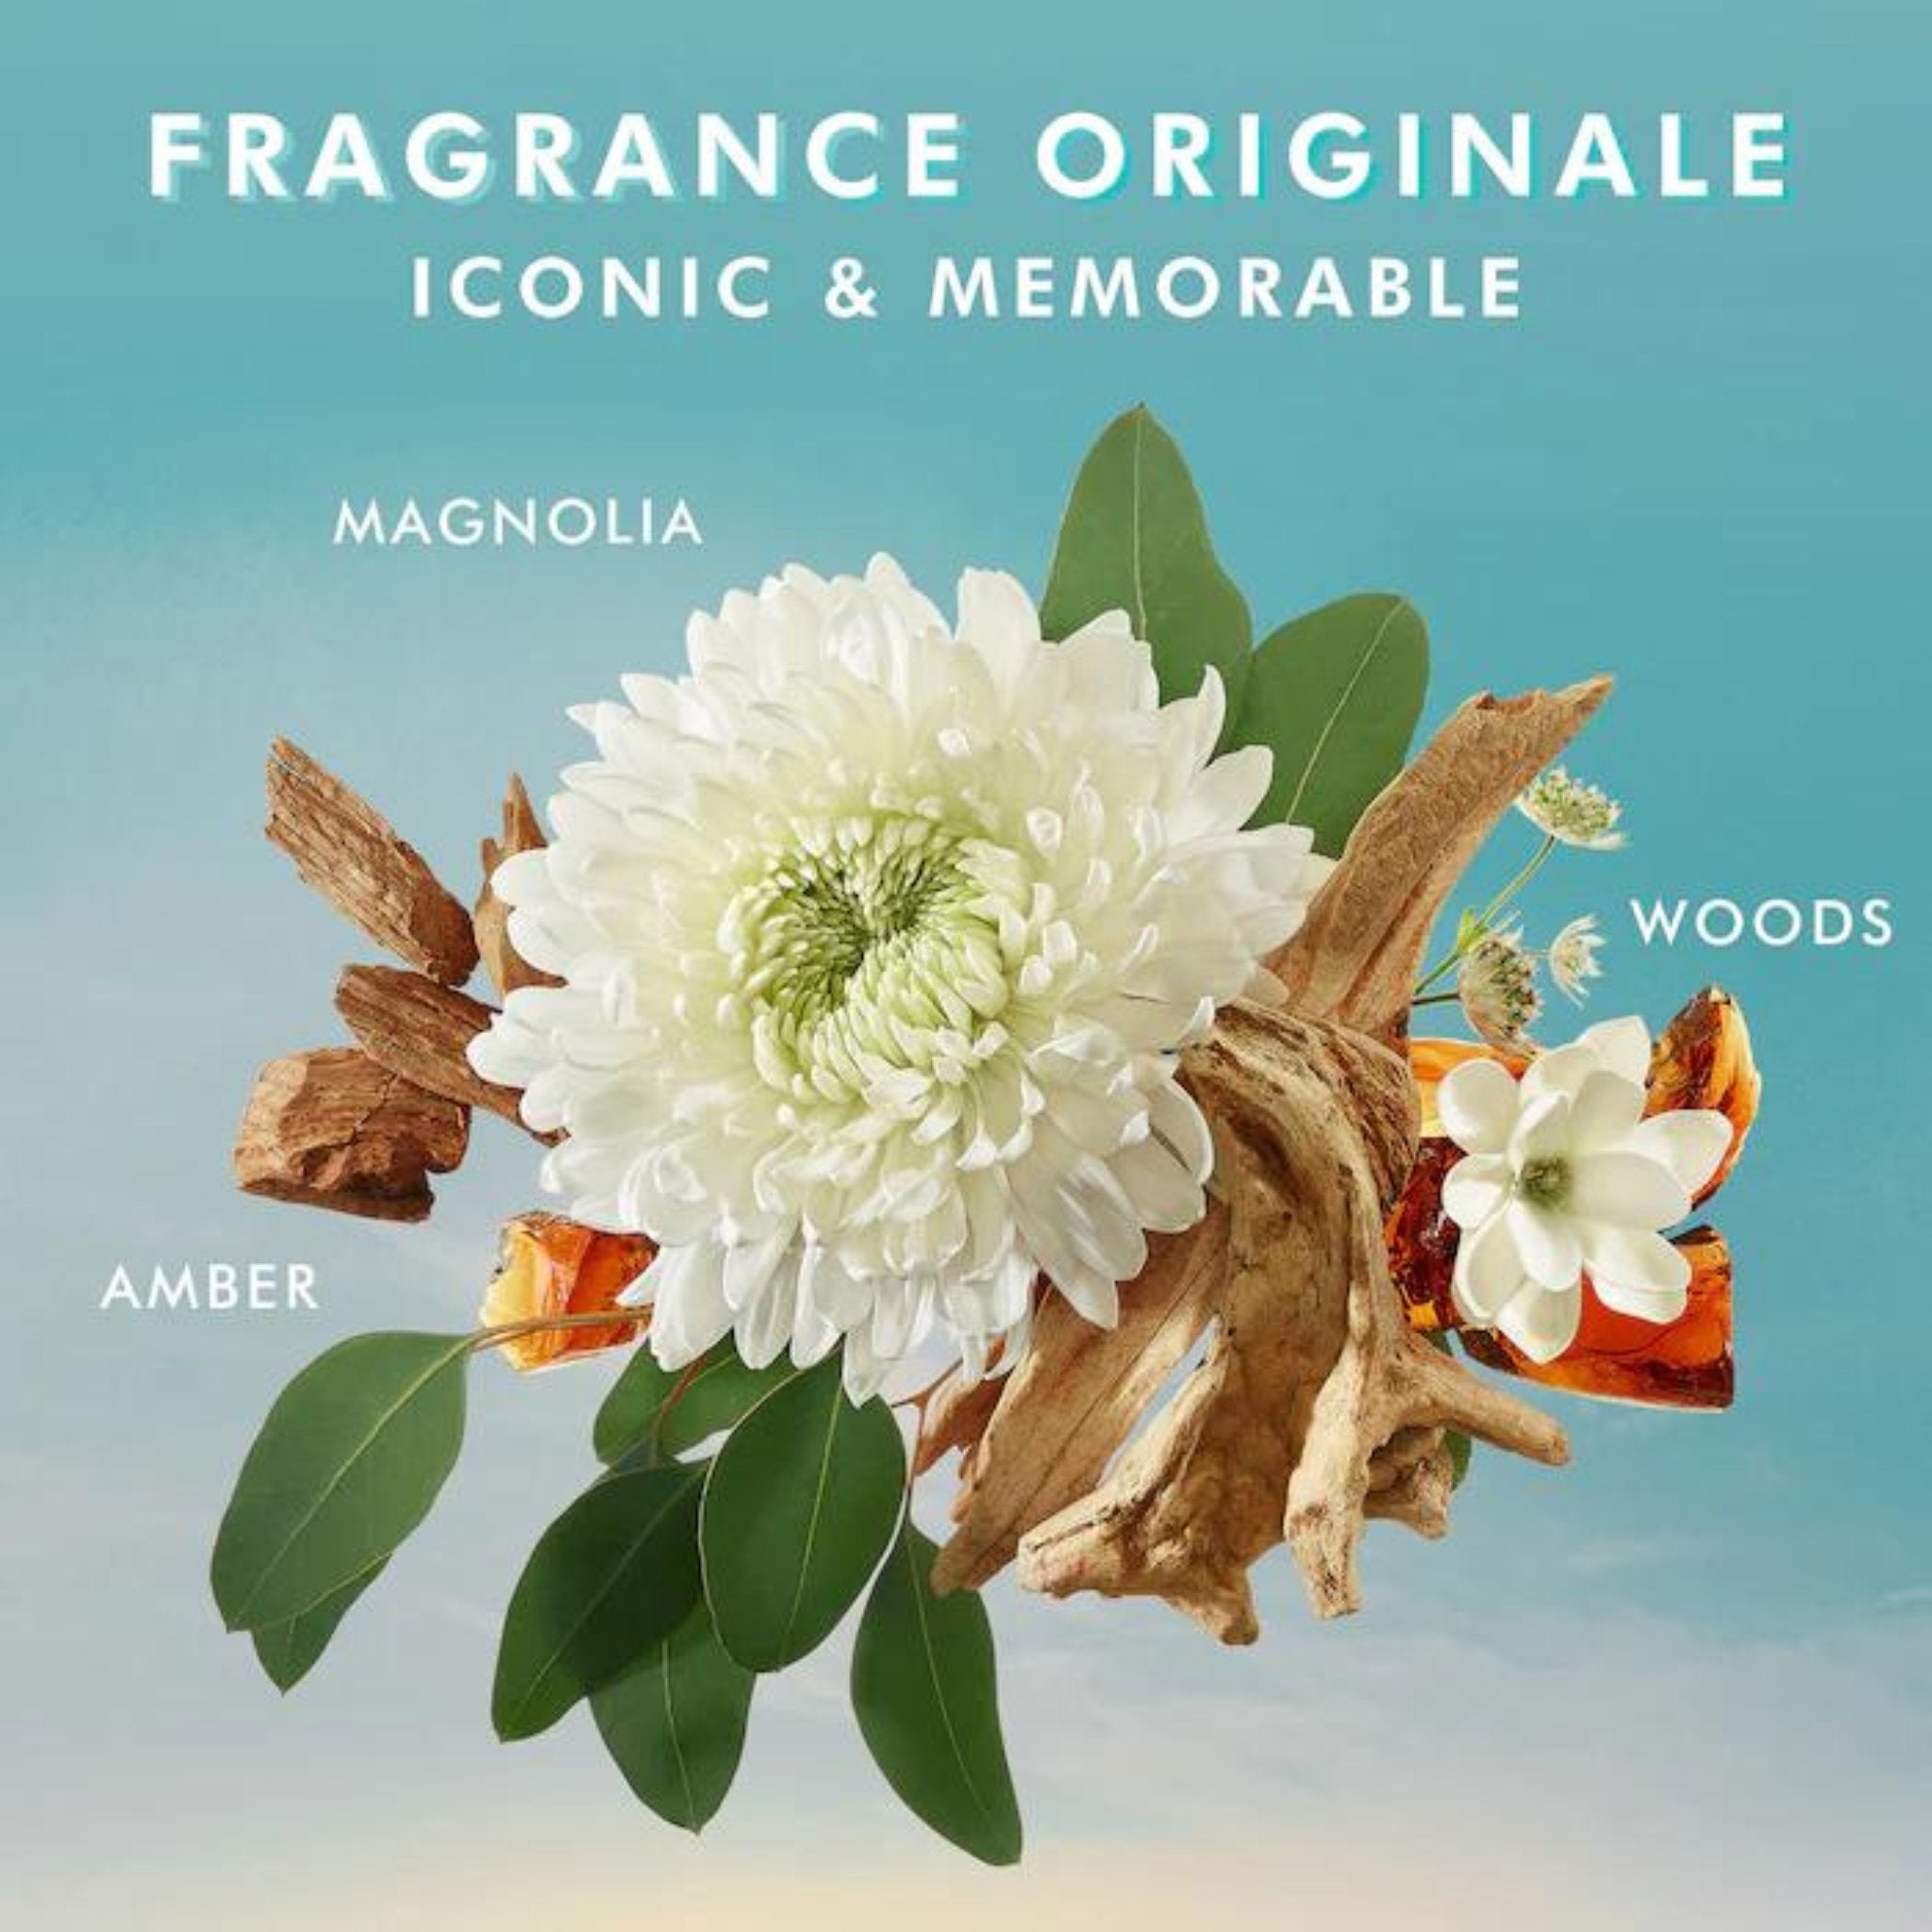 Moroccanoil. Gel Nettoyant pour les Mains Fragrance Originale - 360 ml - Concept C. Shop